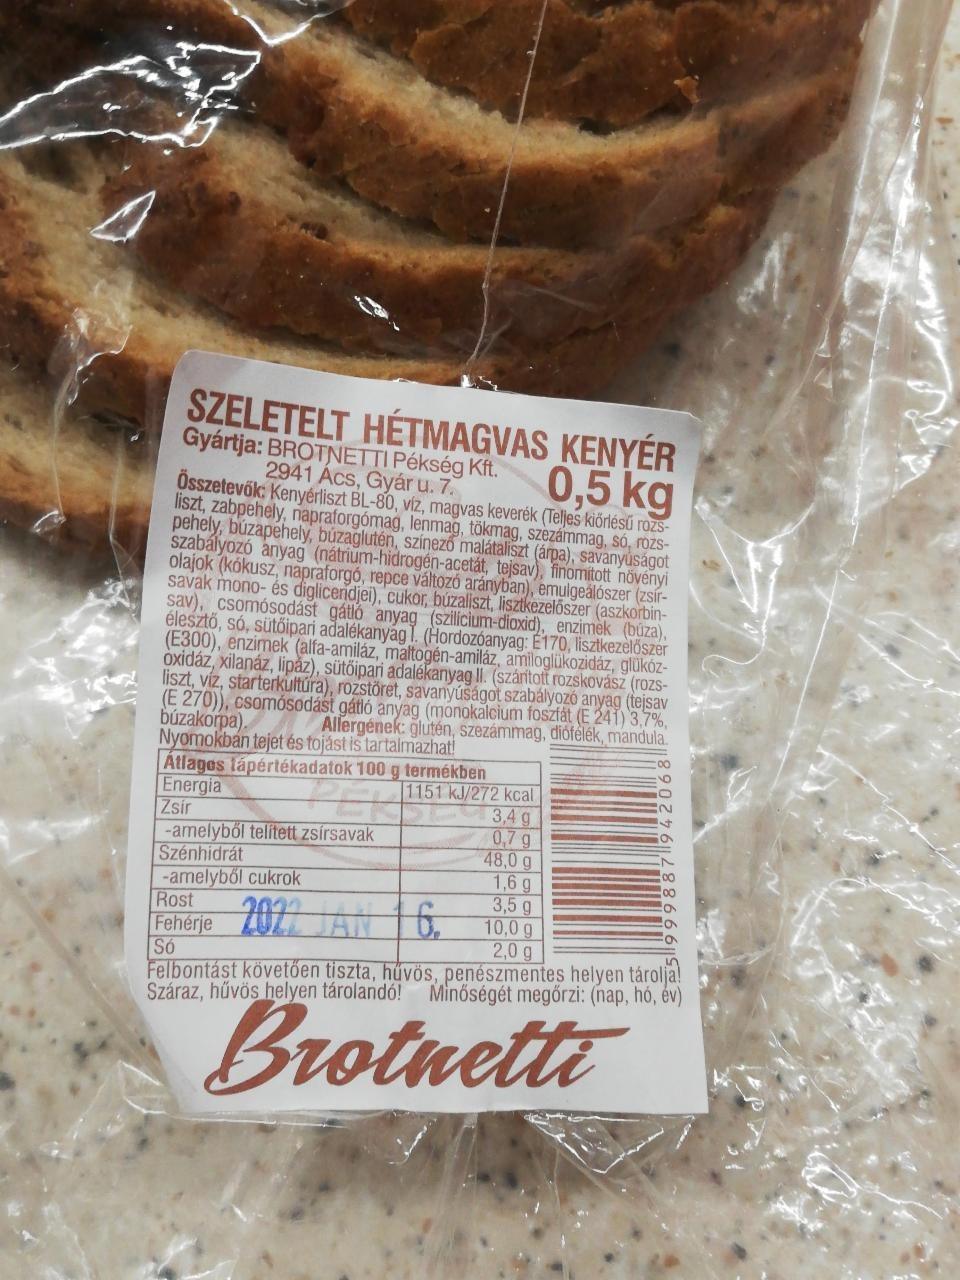 Képek - Szeletelt hétmagvas kenyér Brotnetti